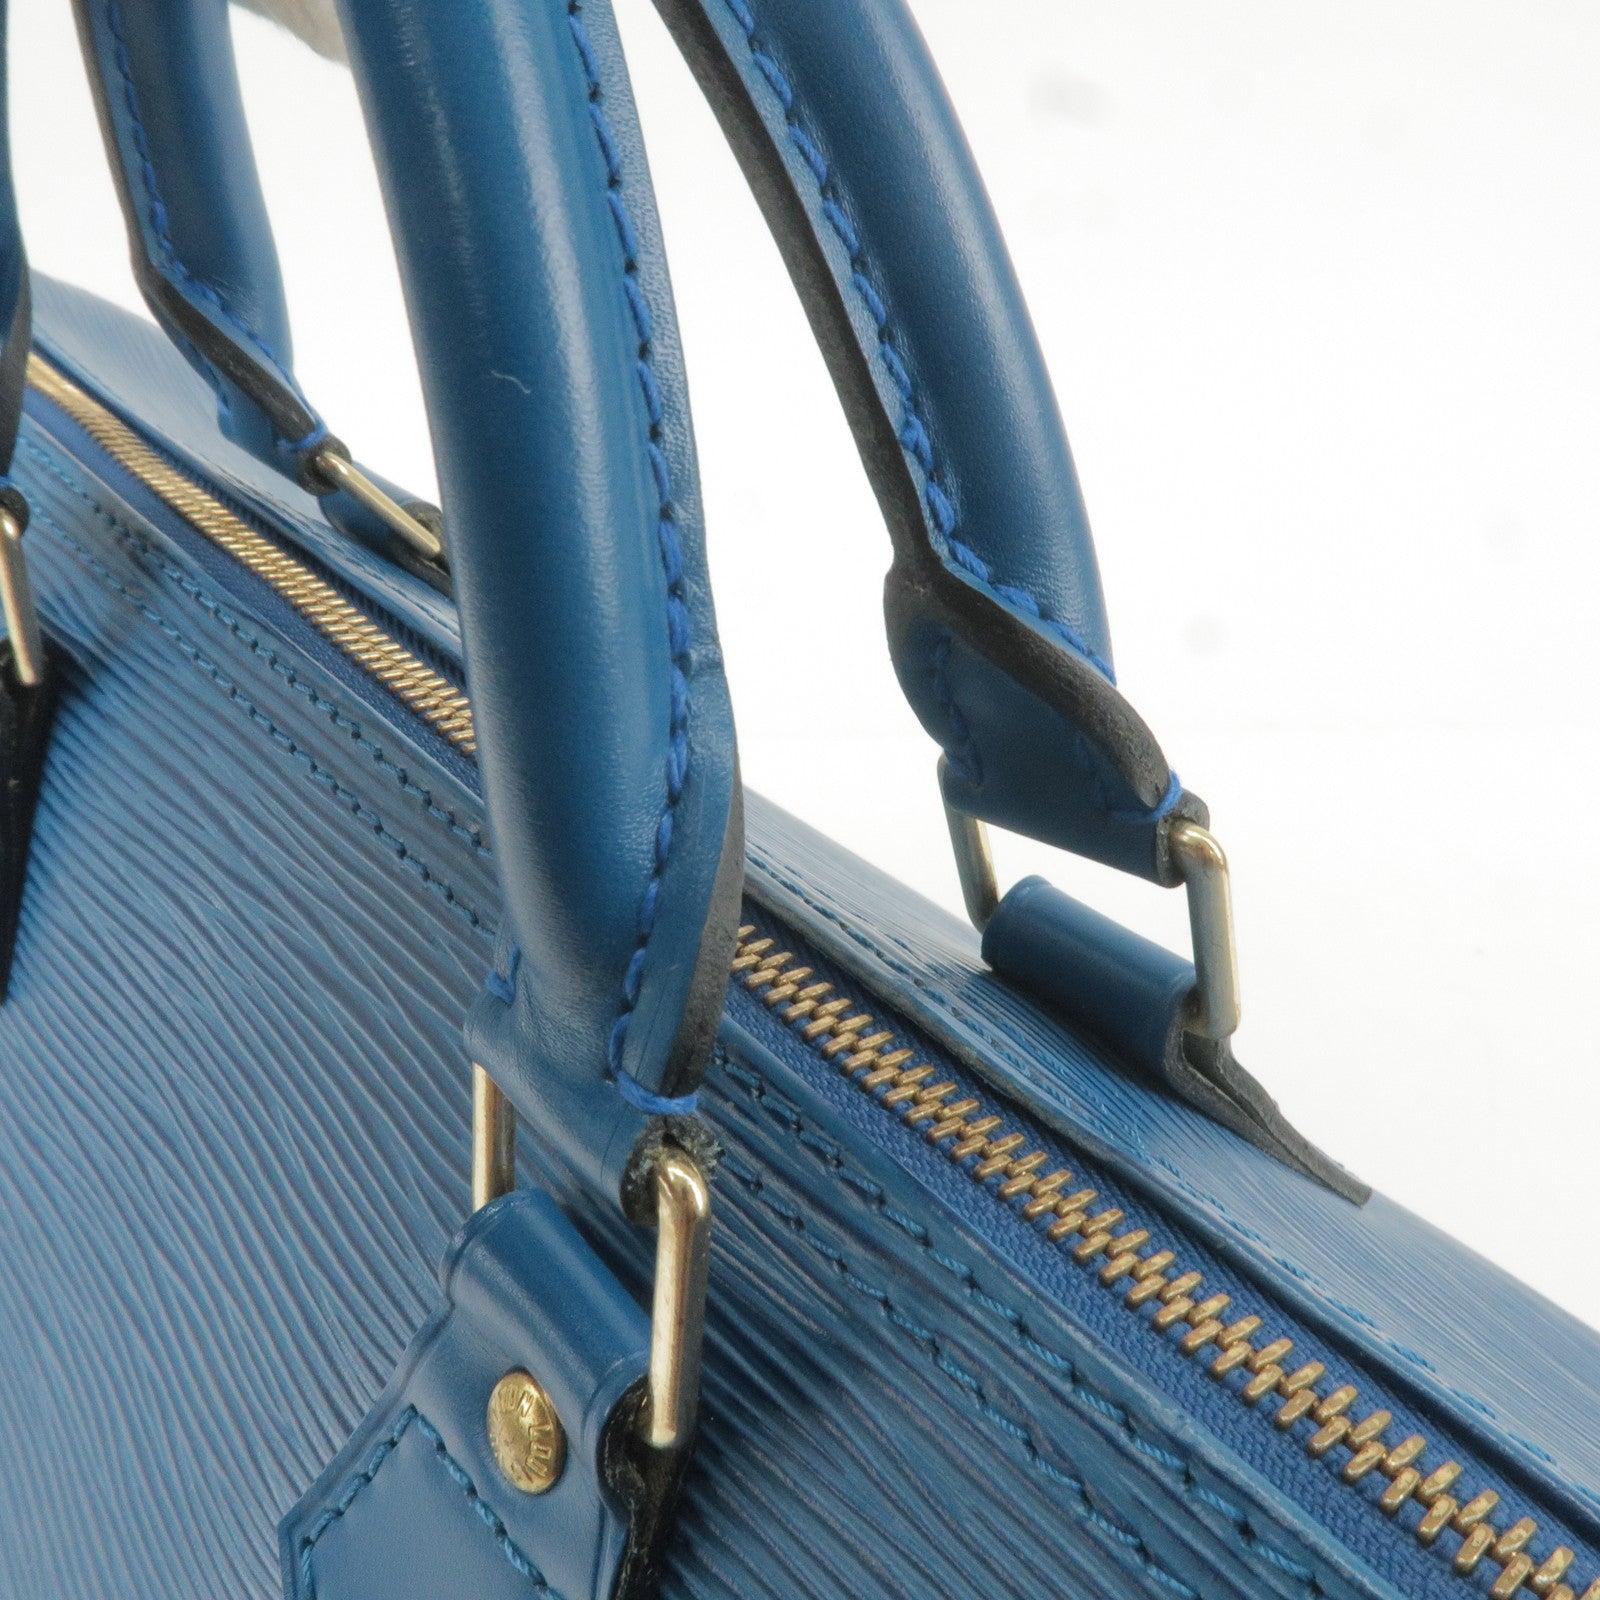 Blue Louis Vuitton Epi Speedy 30 Boston Bag